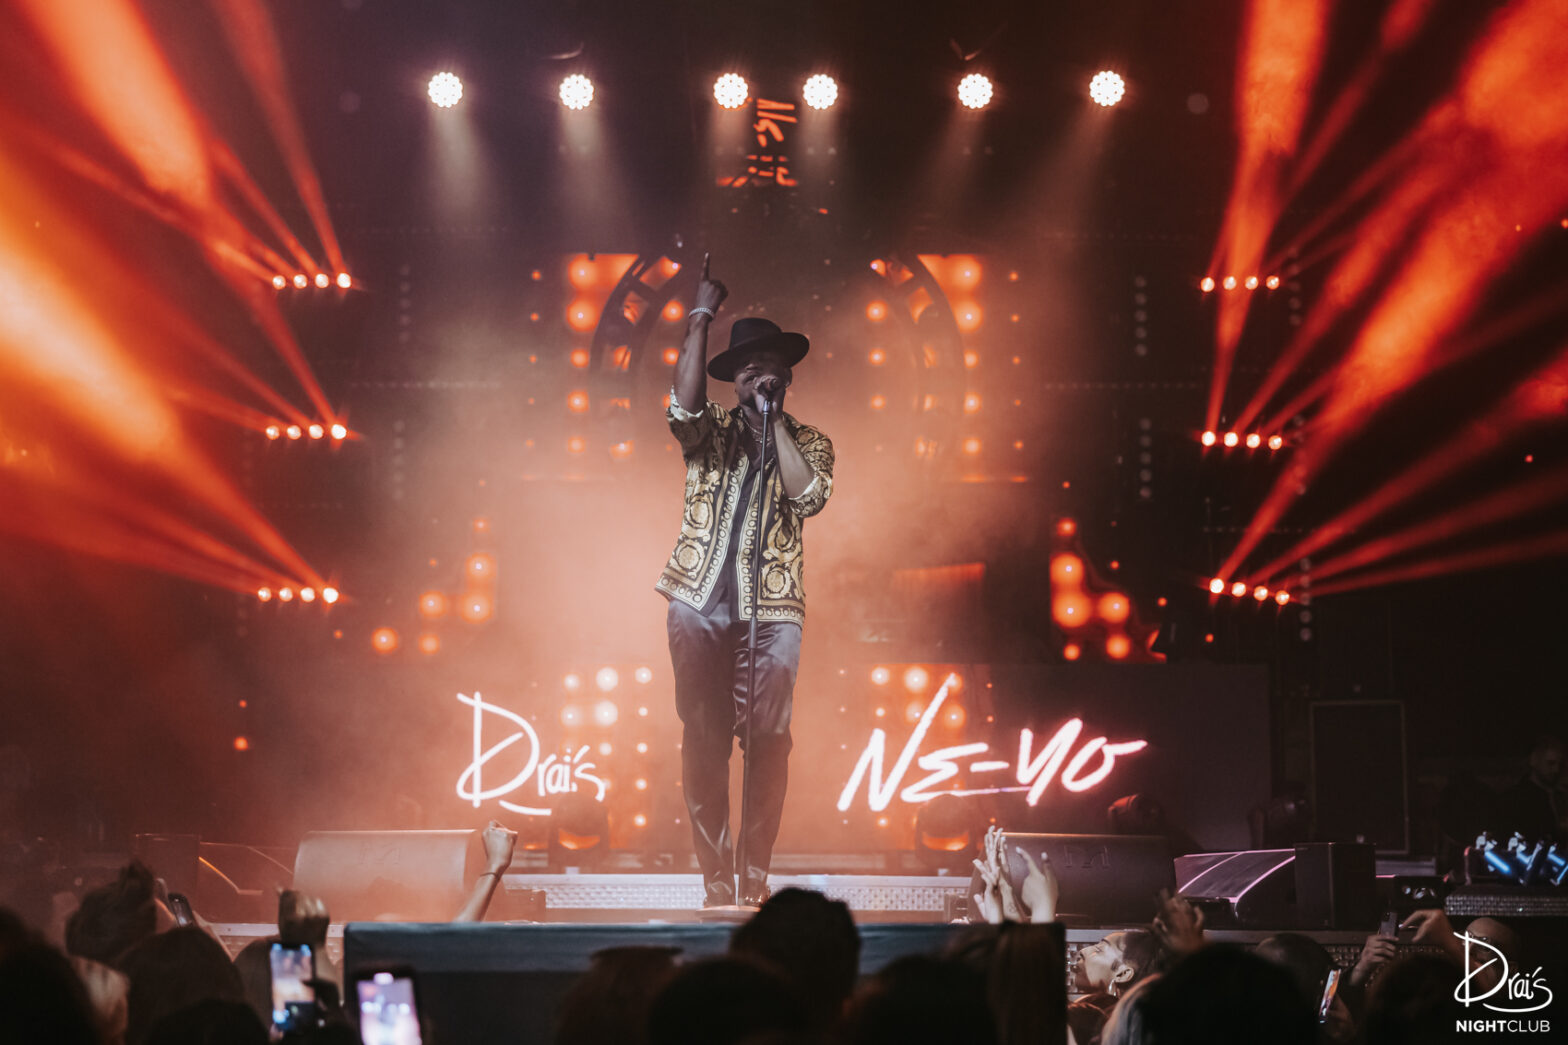 Singer Ne-Yo performing on stage at Club Drais in Vegas